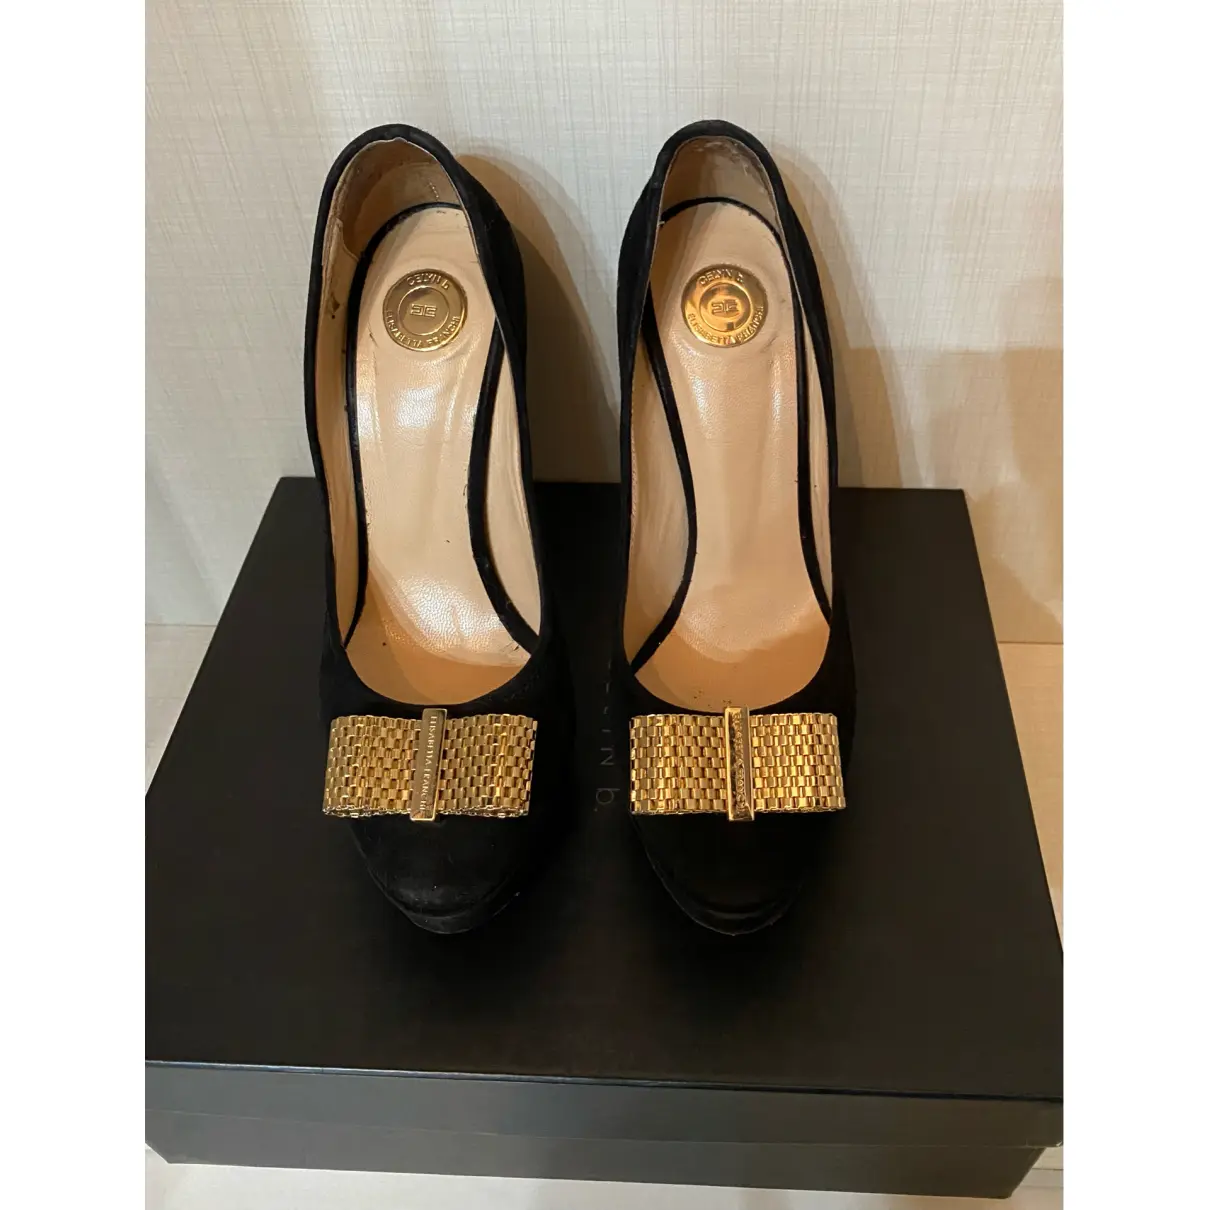 Buy Elisabetta Franchi Heels online